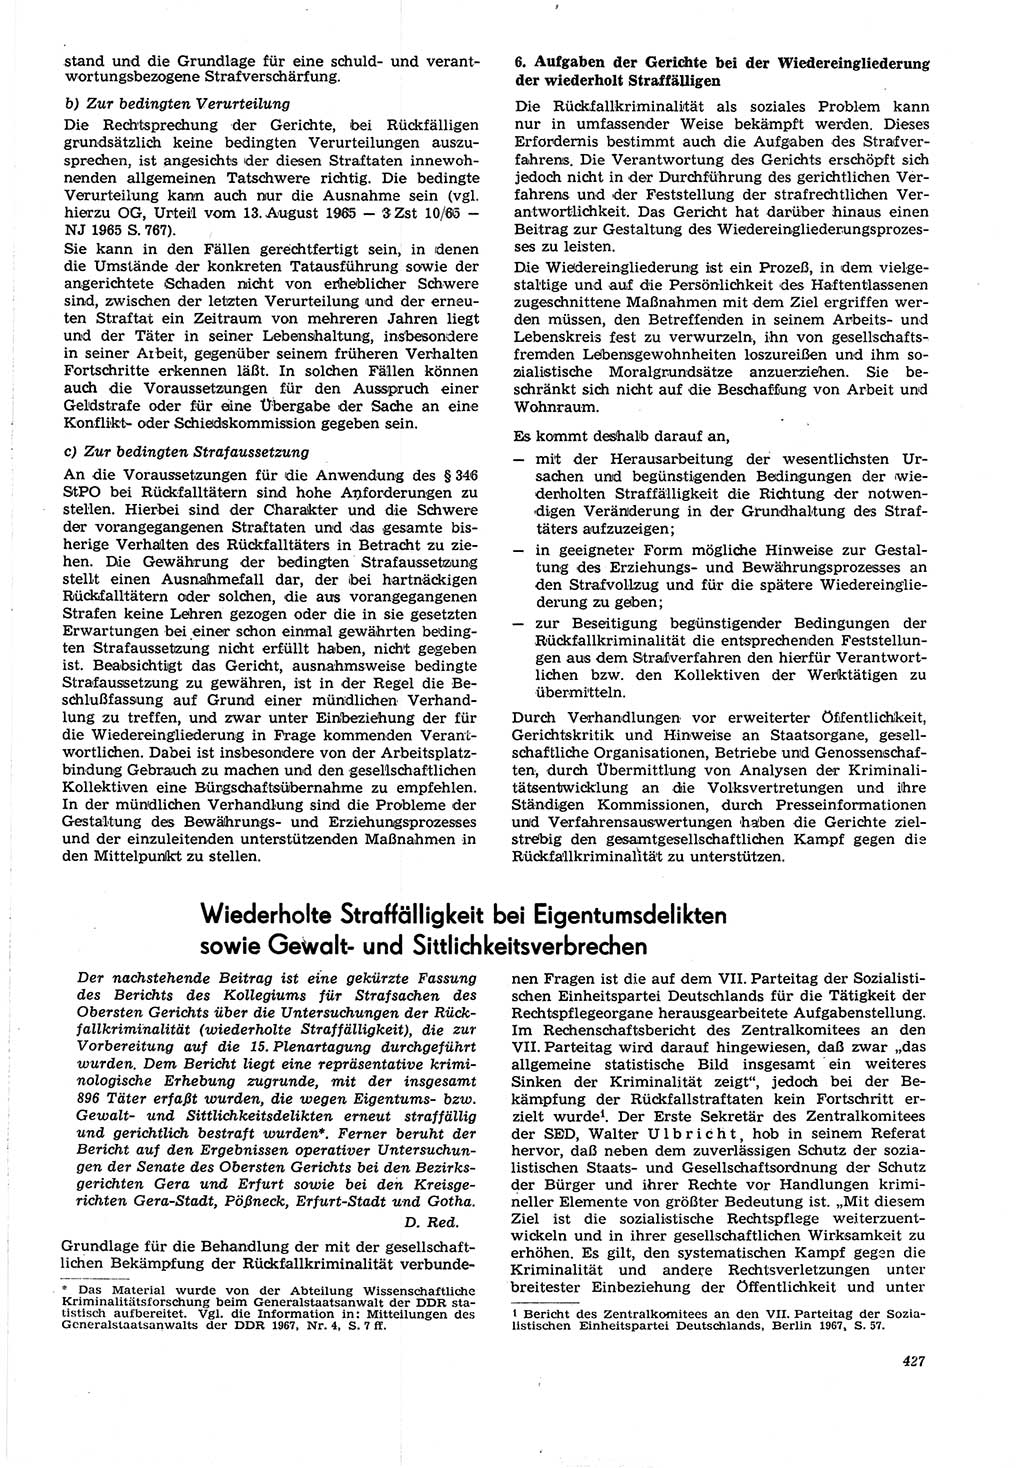 Neue Justiz (NJ), Zeitschrift für Recht und Rechtswissenschaft [Deutsche Demokratische Republik (DDR)], 21. Jahrgang 1967, Seite 427 (NJ DDR 1967, S. 427)